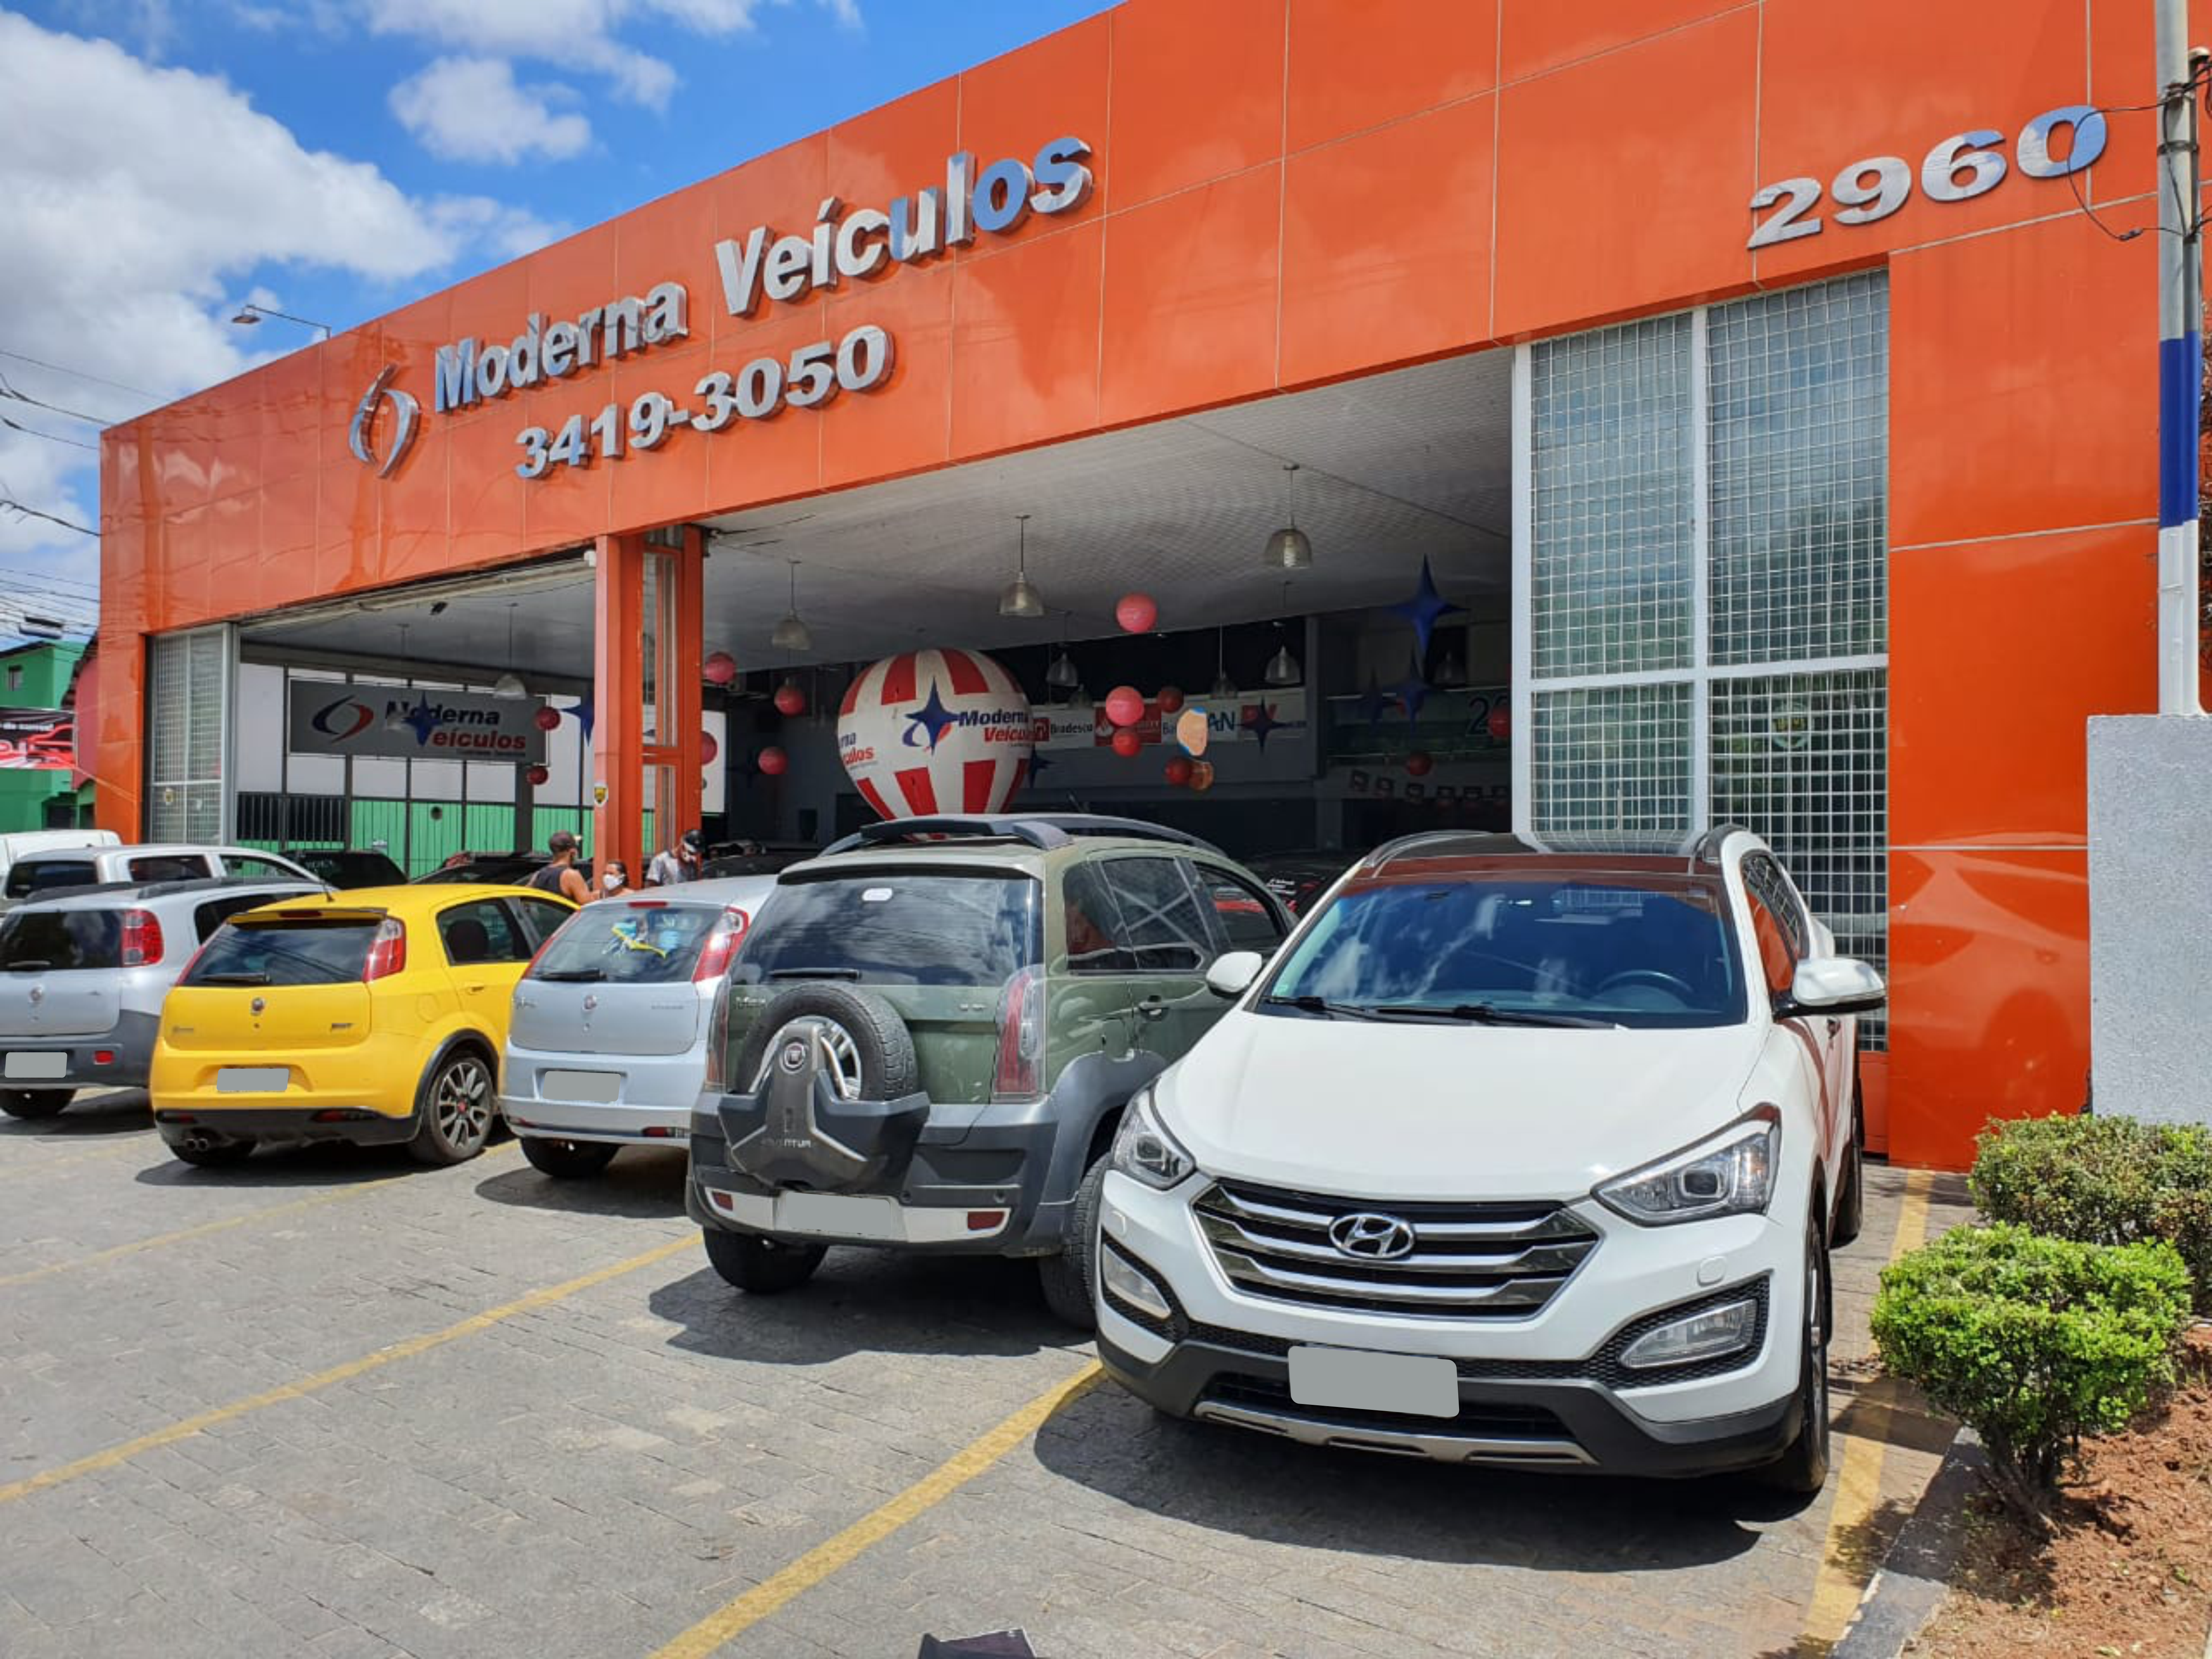 Fachada da loja Veículos à venda em Moderna Veiculos - Belo Horizonte - MG